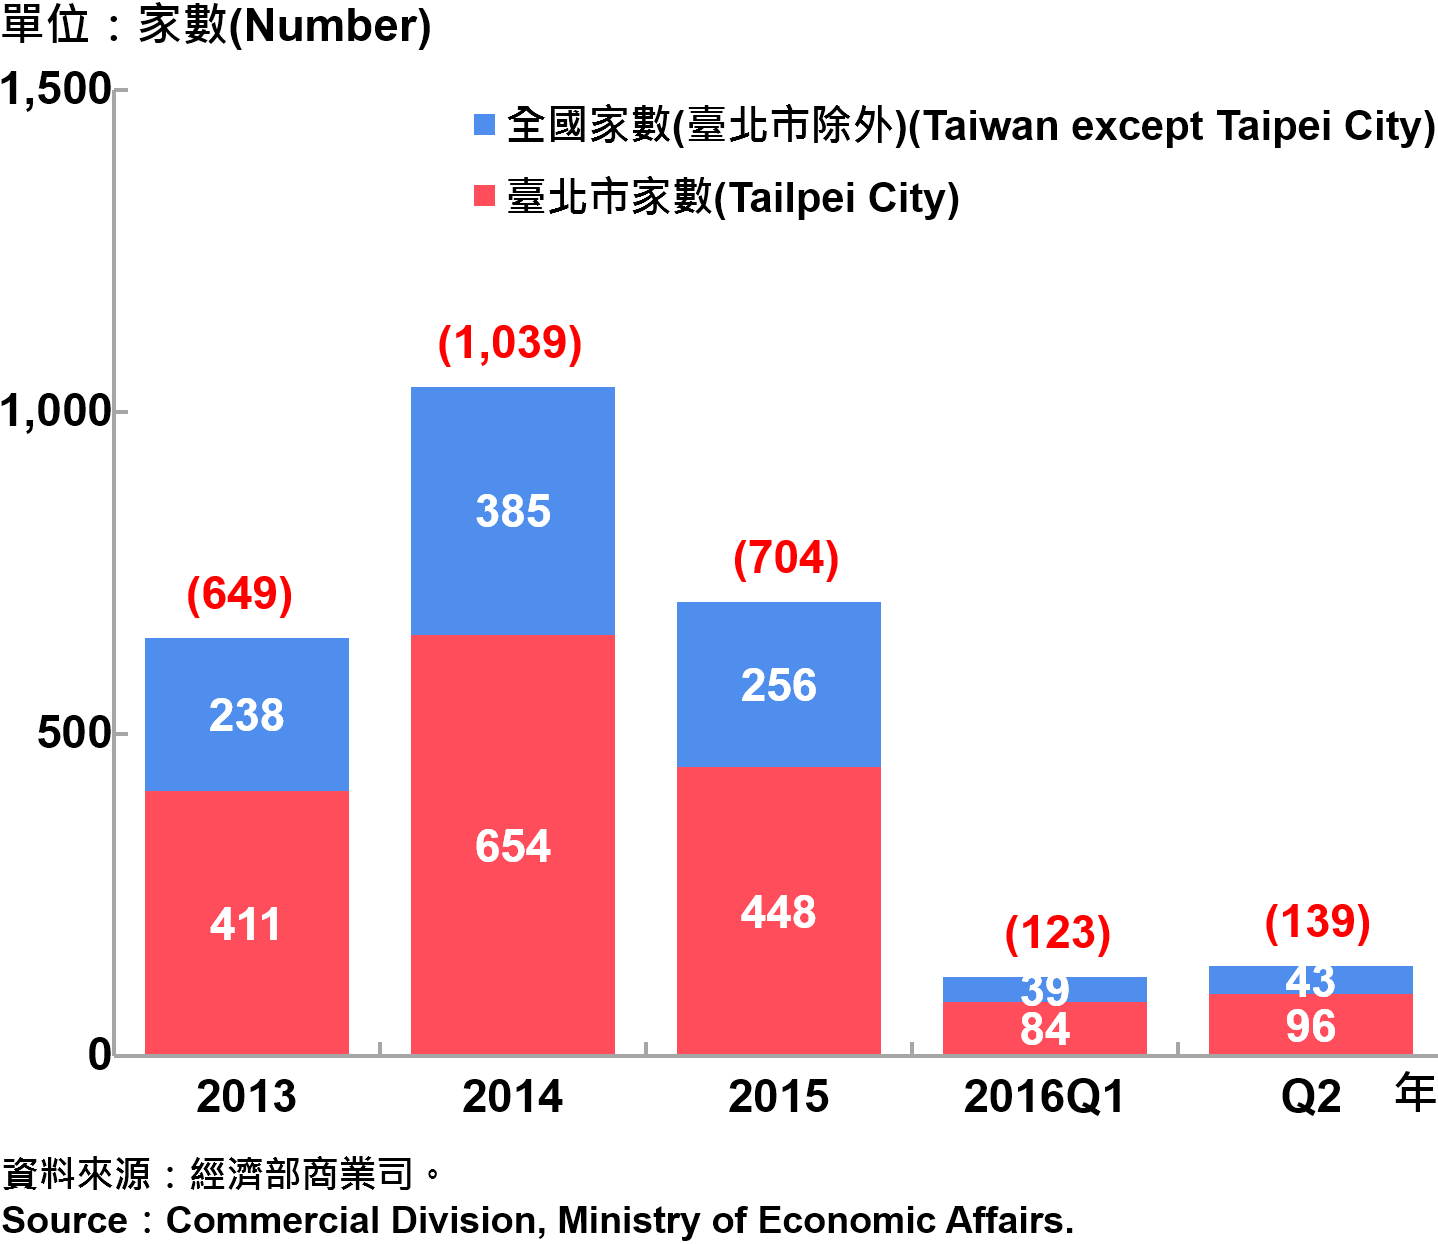 圖14、臺北市外商公司新設立家數趨勢圖 Number of Newly Established Foreign Companies in Taipei Source: Commercial Division, Ministry of Economic Affairs.